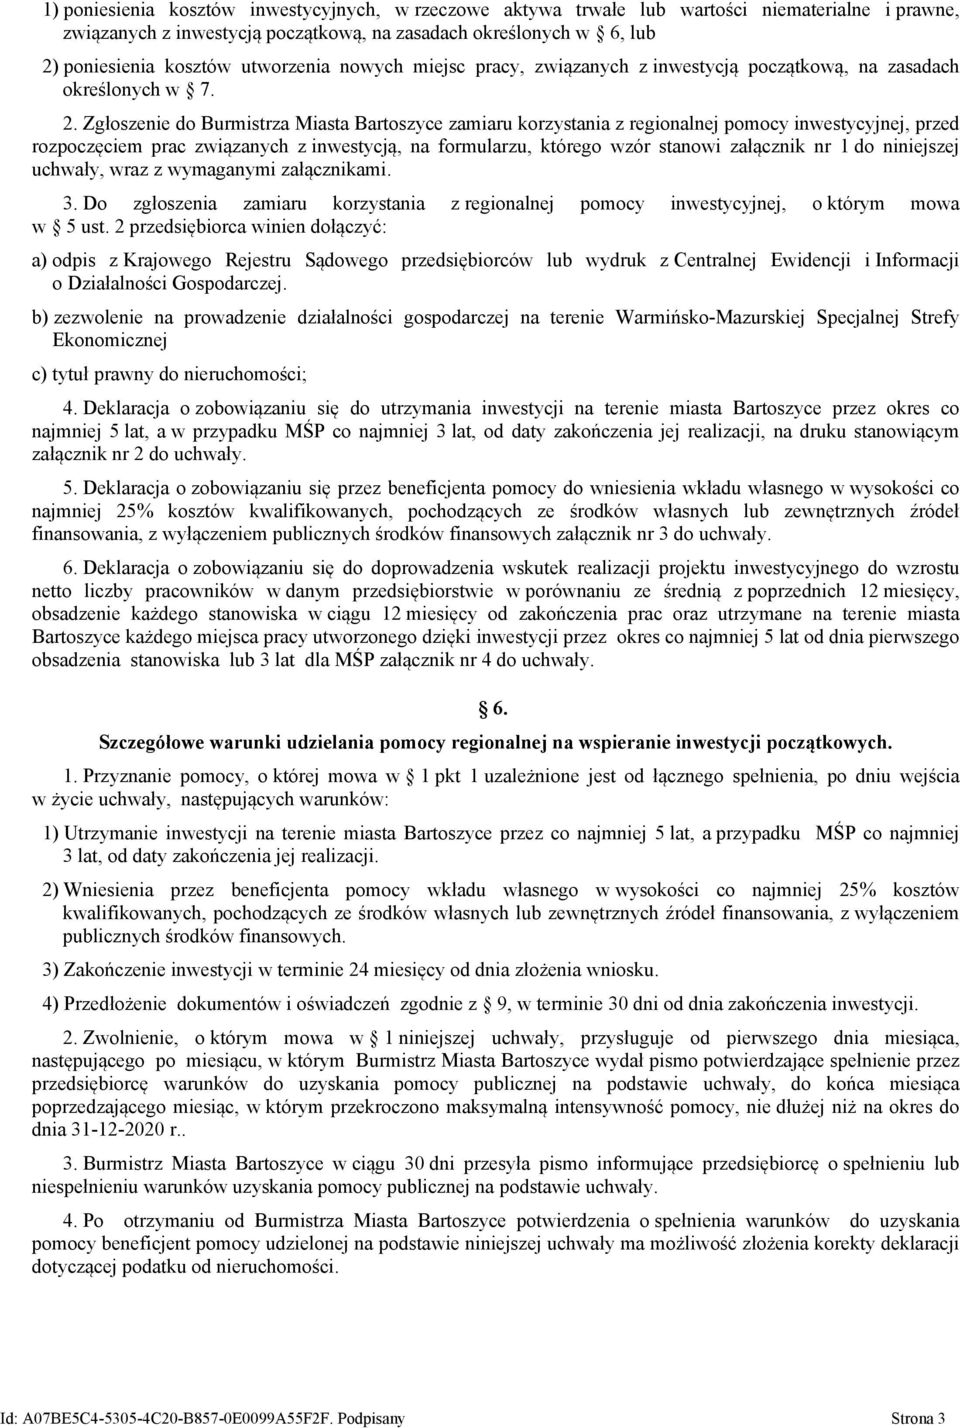 Zgłoszenie do Burmistrza Miasta Bartoszyce zamiaru korzystania z regionalnej pomocy inwestycyjnej, przed rozpoczęciem prac związanych z inwestycją, na formularzu, którego wzór stanowi załącznik nr 1